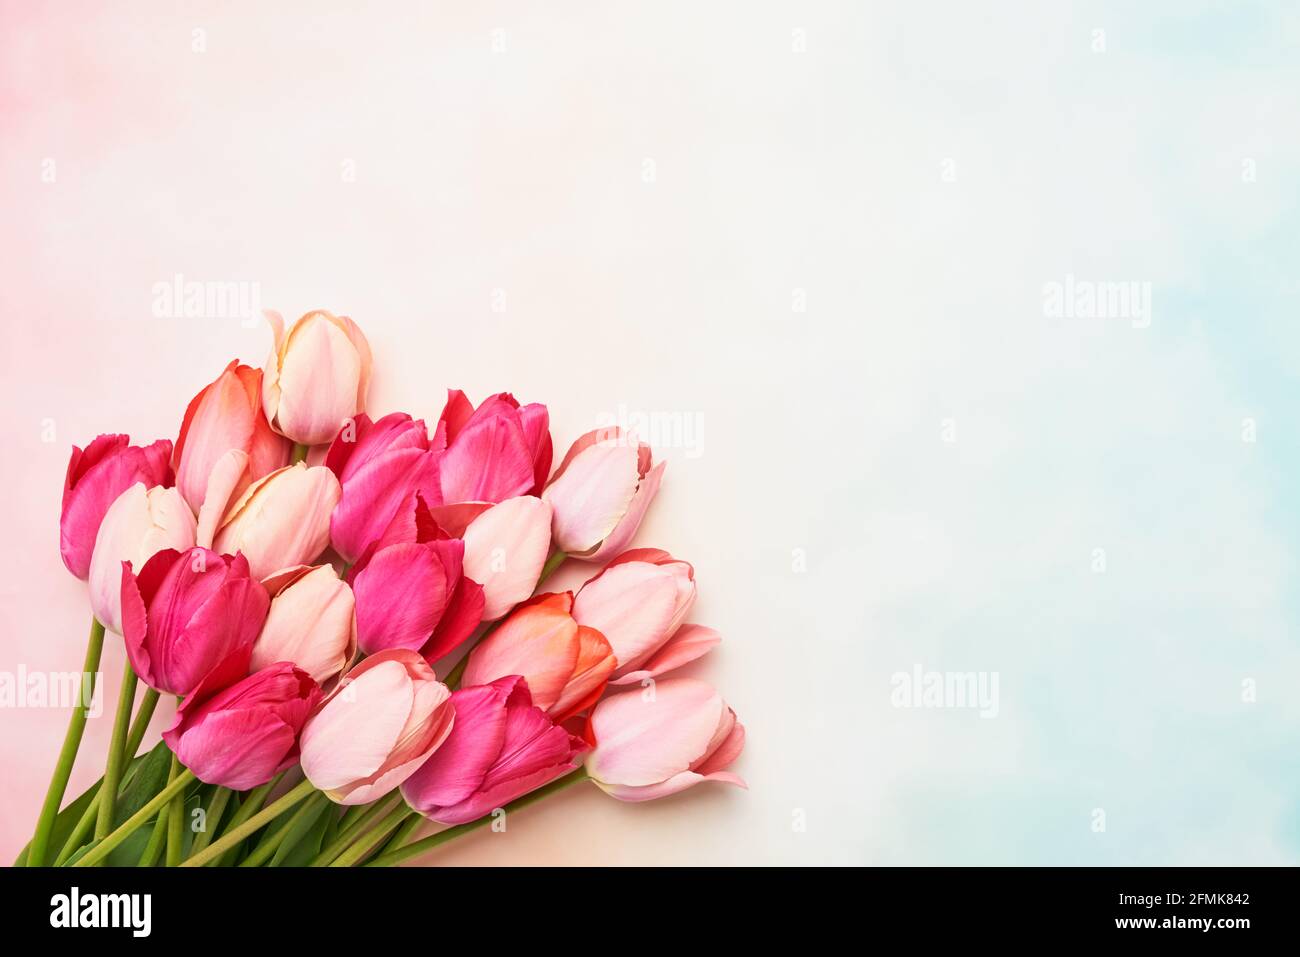 Farbenfrohe rosa Tulpenblumen auf einem rosa pastellfarbenen Hintergrund, selektiver Fokus. Muttertag, Geburtstagsfeier Konzept. Flach liegend, Platz für Text kopieren Stockfoto